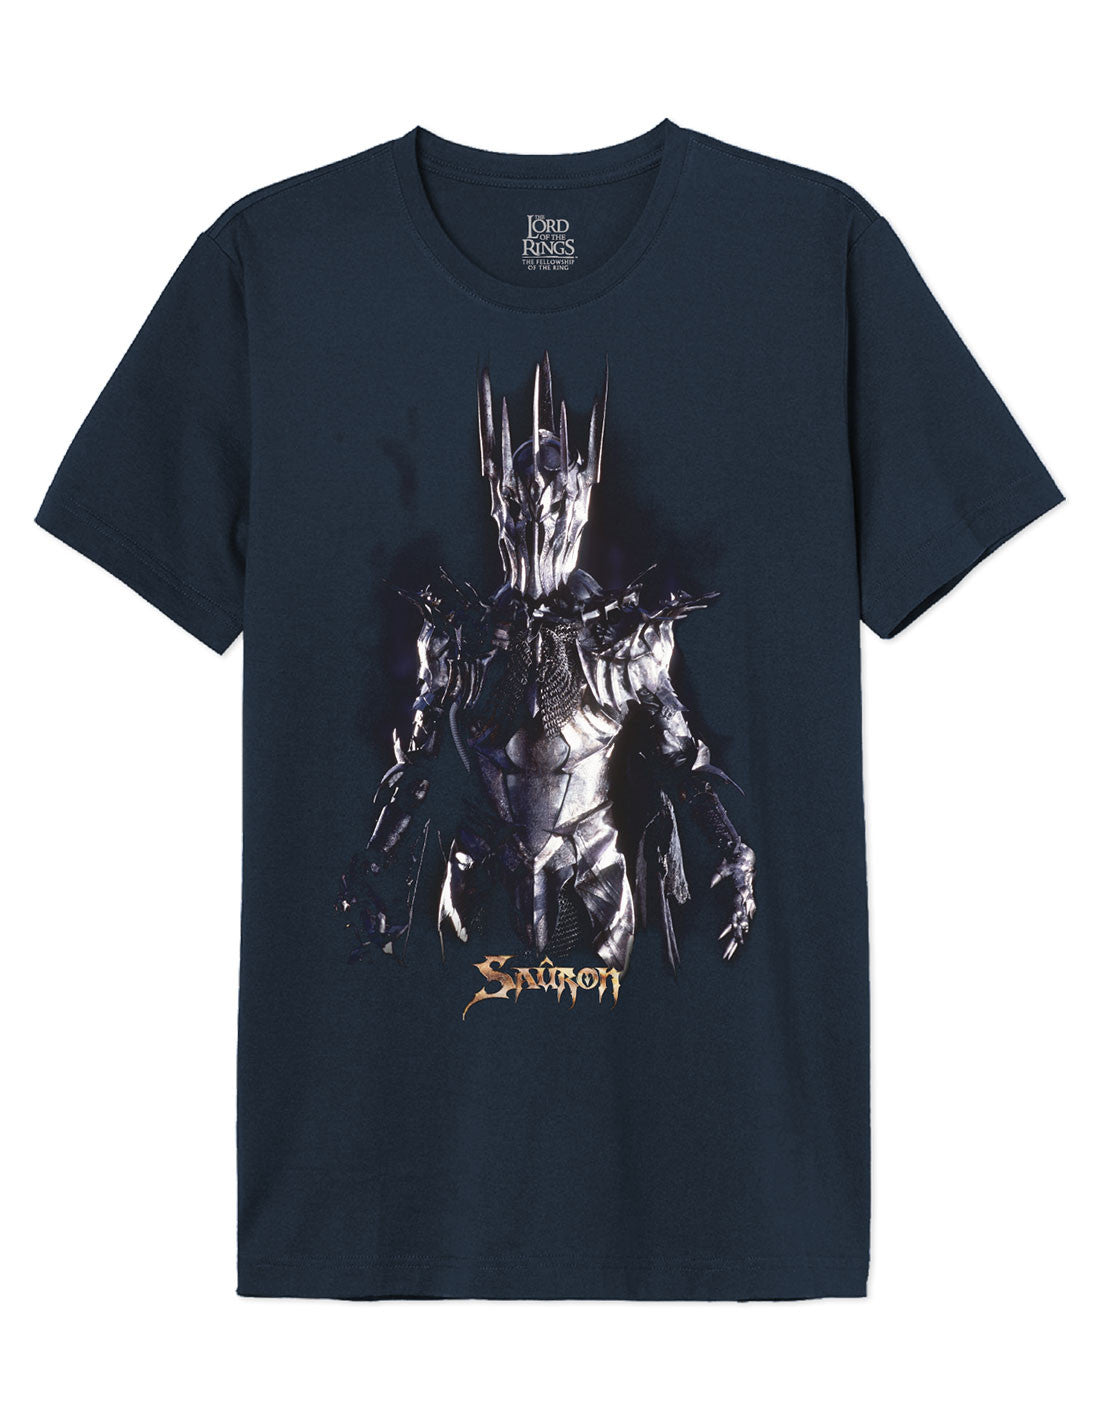 T-shirt Le Seigneur des anneaux - Saûron